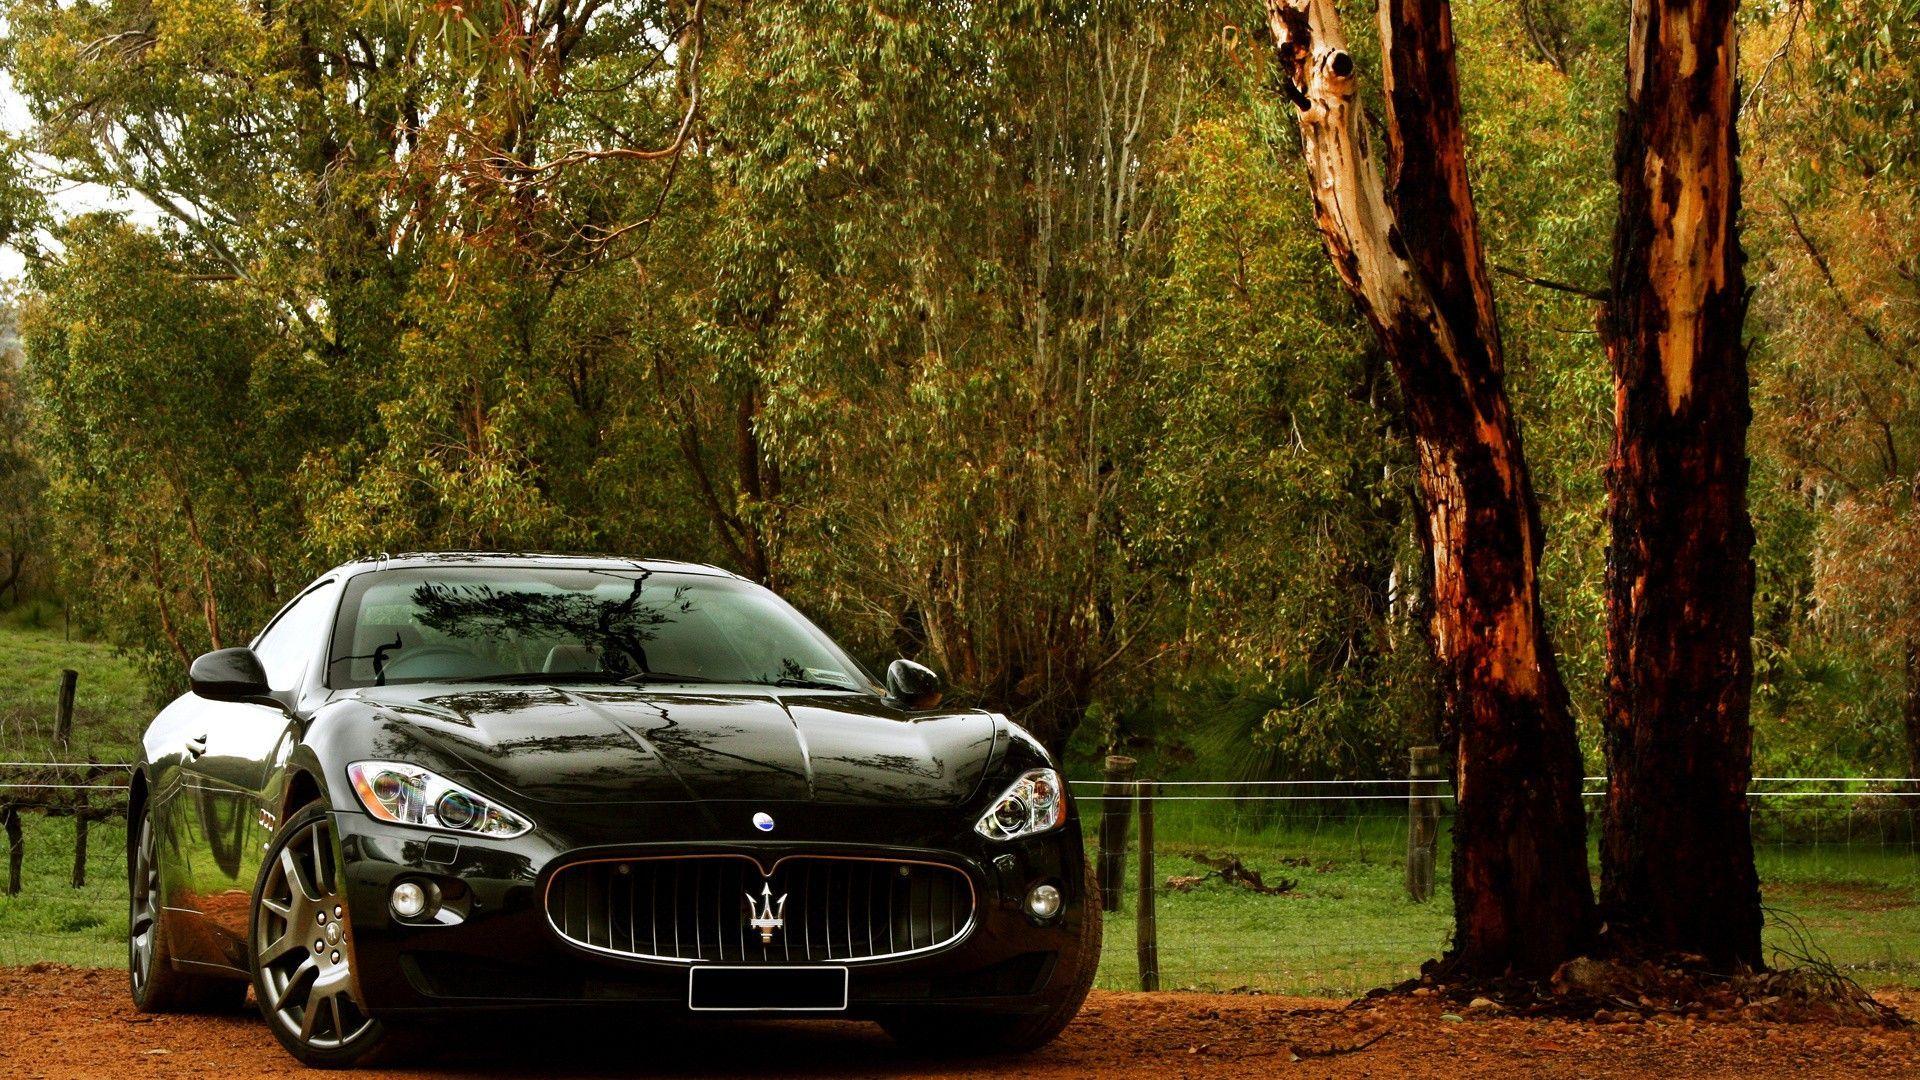 Maserati GranSport Spyder HD desktop wallpaper Widescreen High